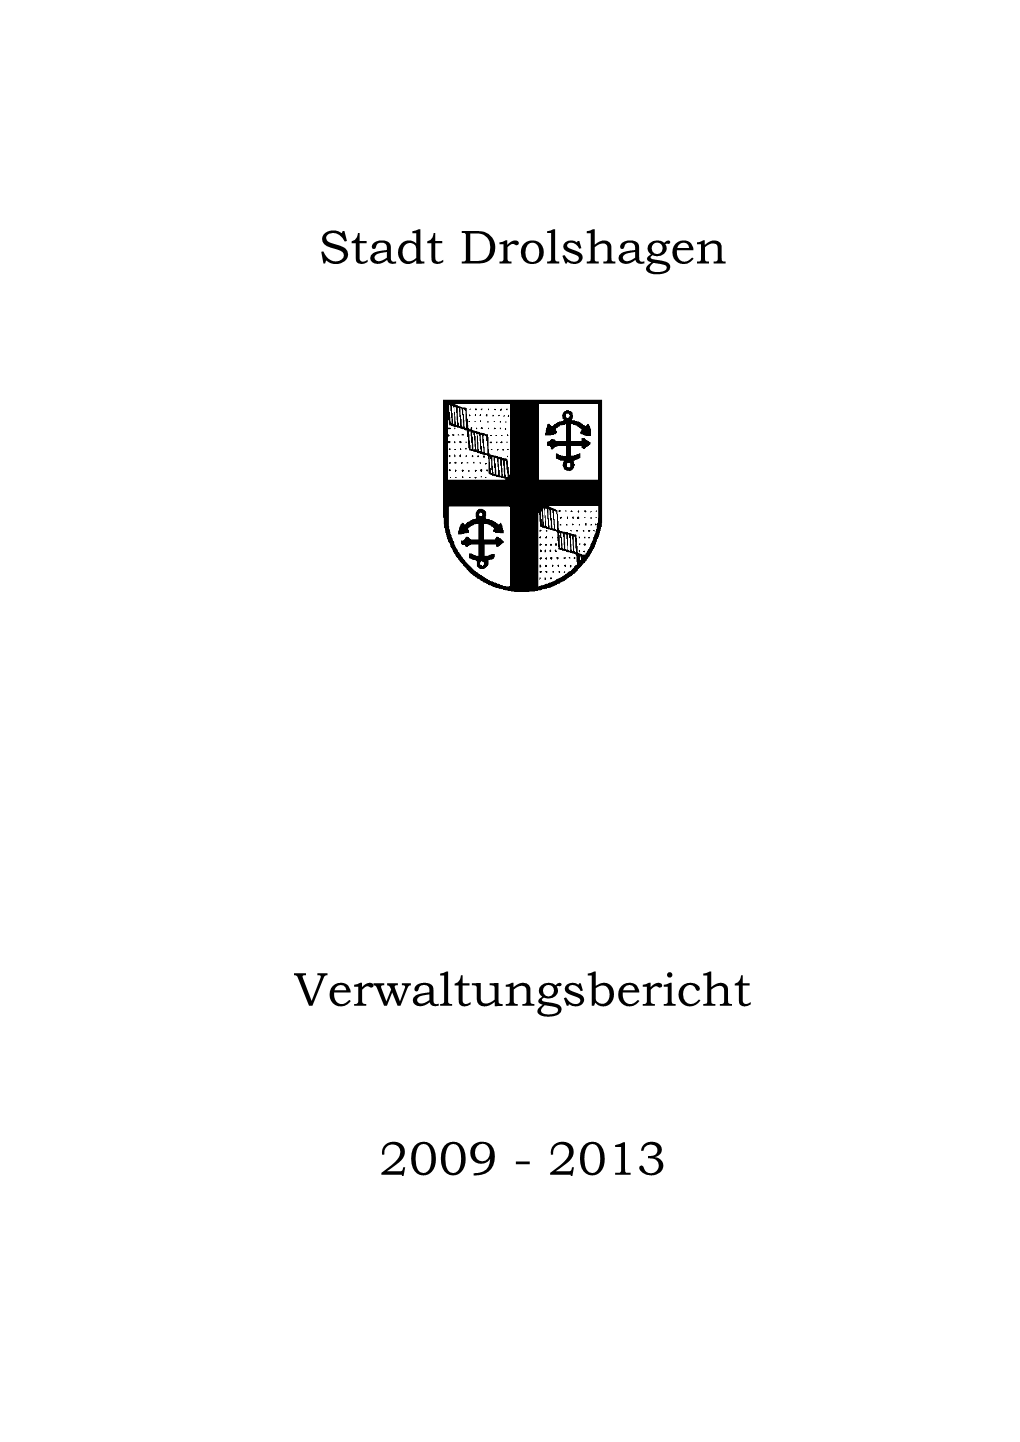 Stadt Drolshagen Verwaltungsbericht 2009